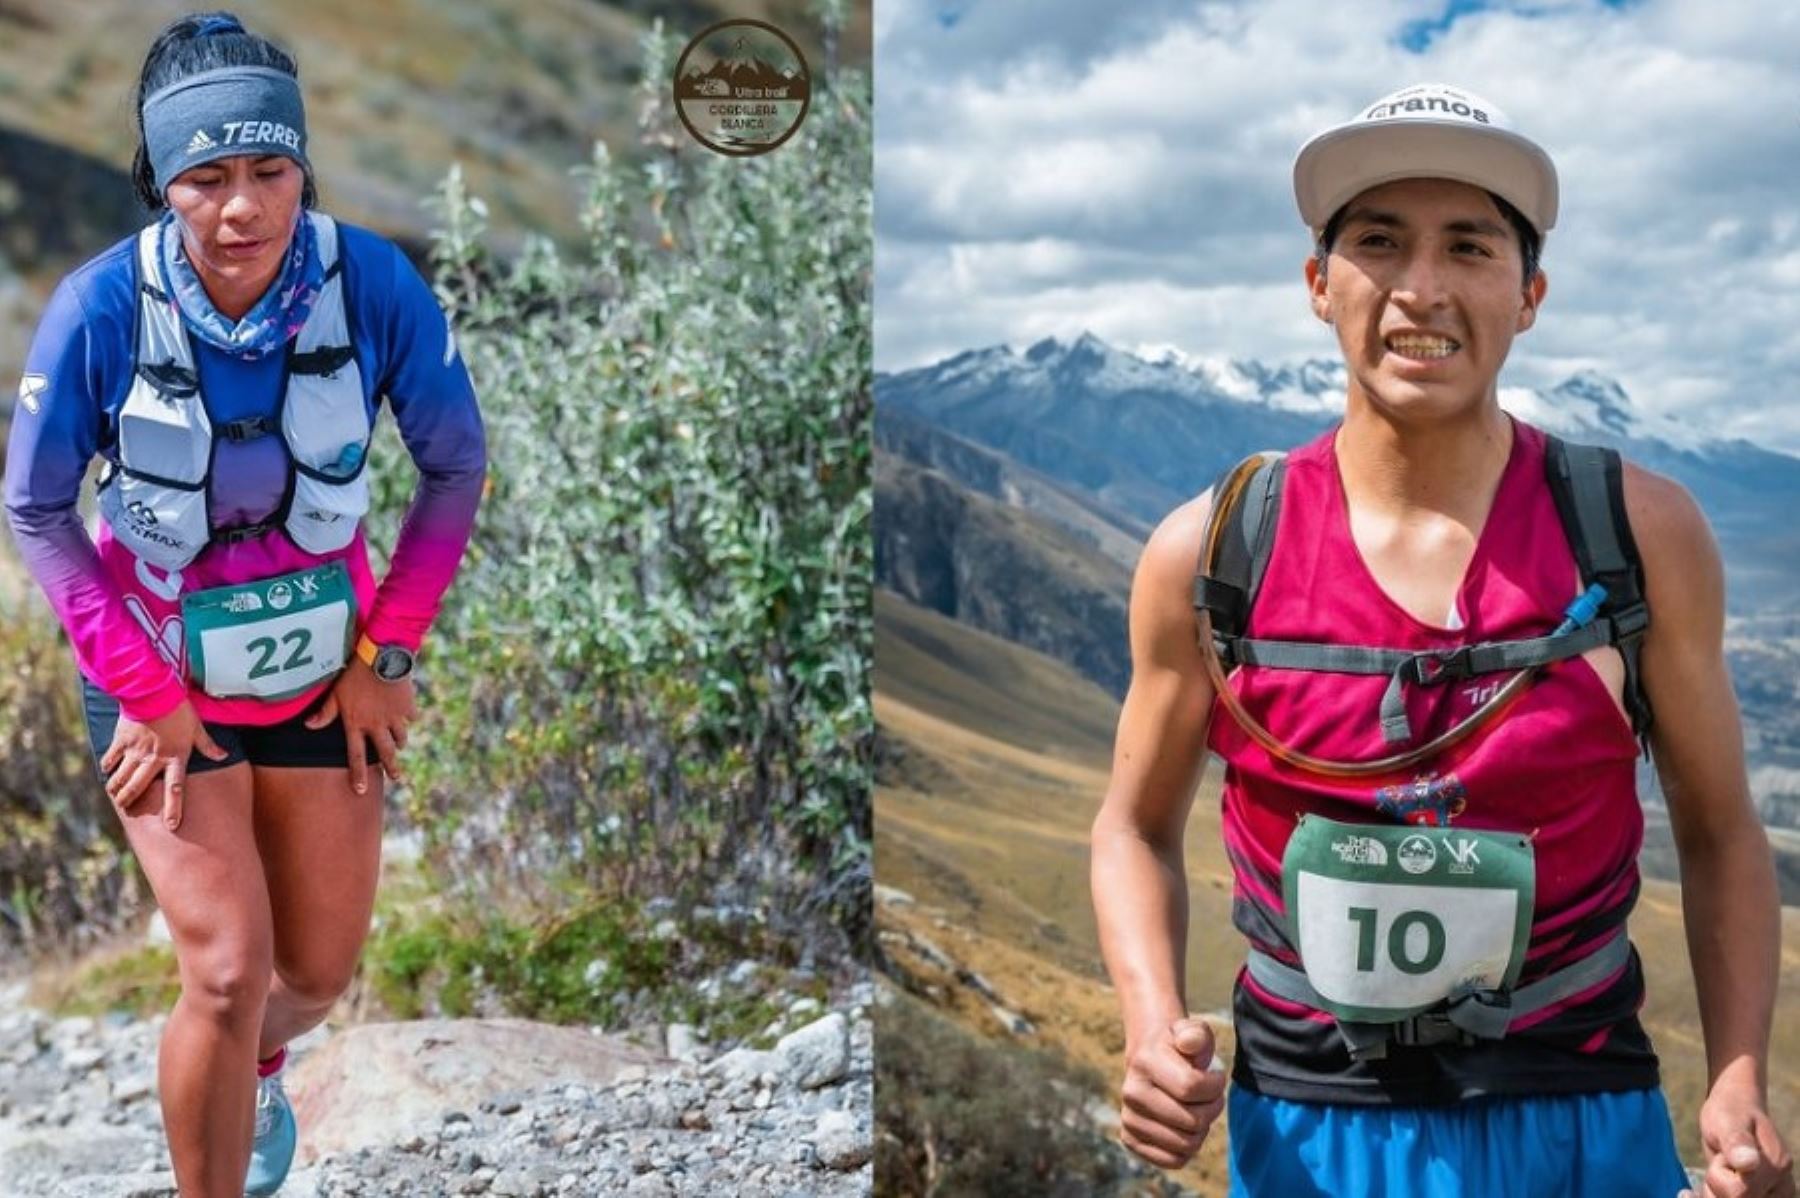 Los corredores peruanos Lucy Mejía y Carlos Flores ocuparon los primeros puestos en la carrera del Kilómetro Vertical, en el marco del Ultra-Trail Cordillera Blanca 2022, que se desarrolla en la provincia de Huaraz del departamento de Áncash.